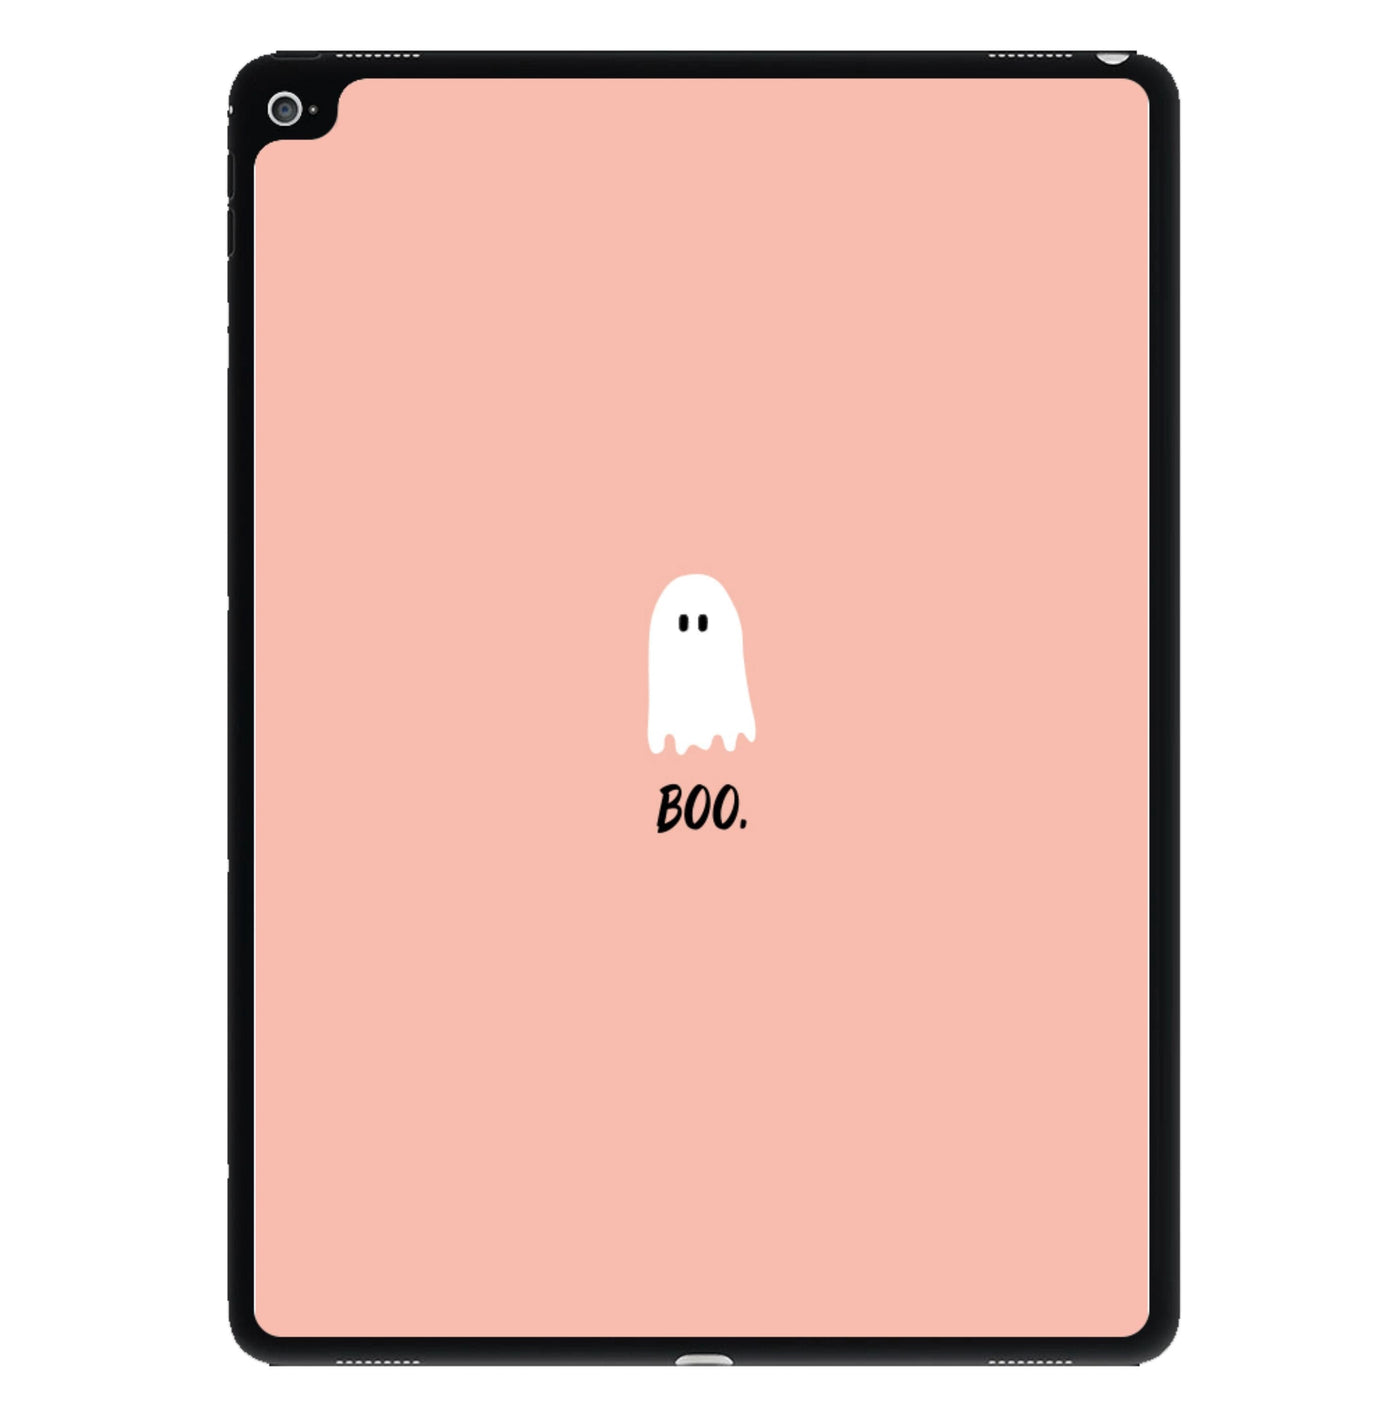 Boo - Ghost Halloween iPad Case